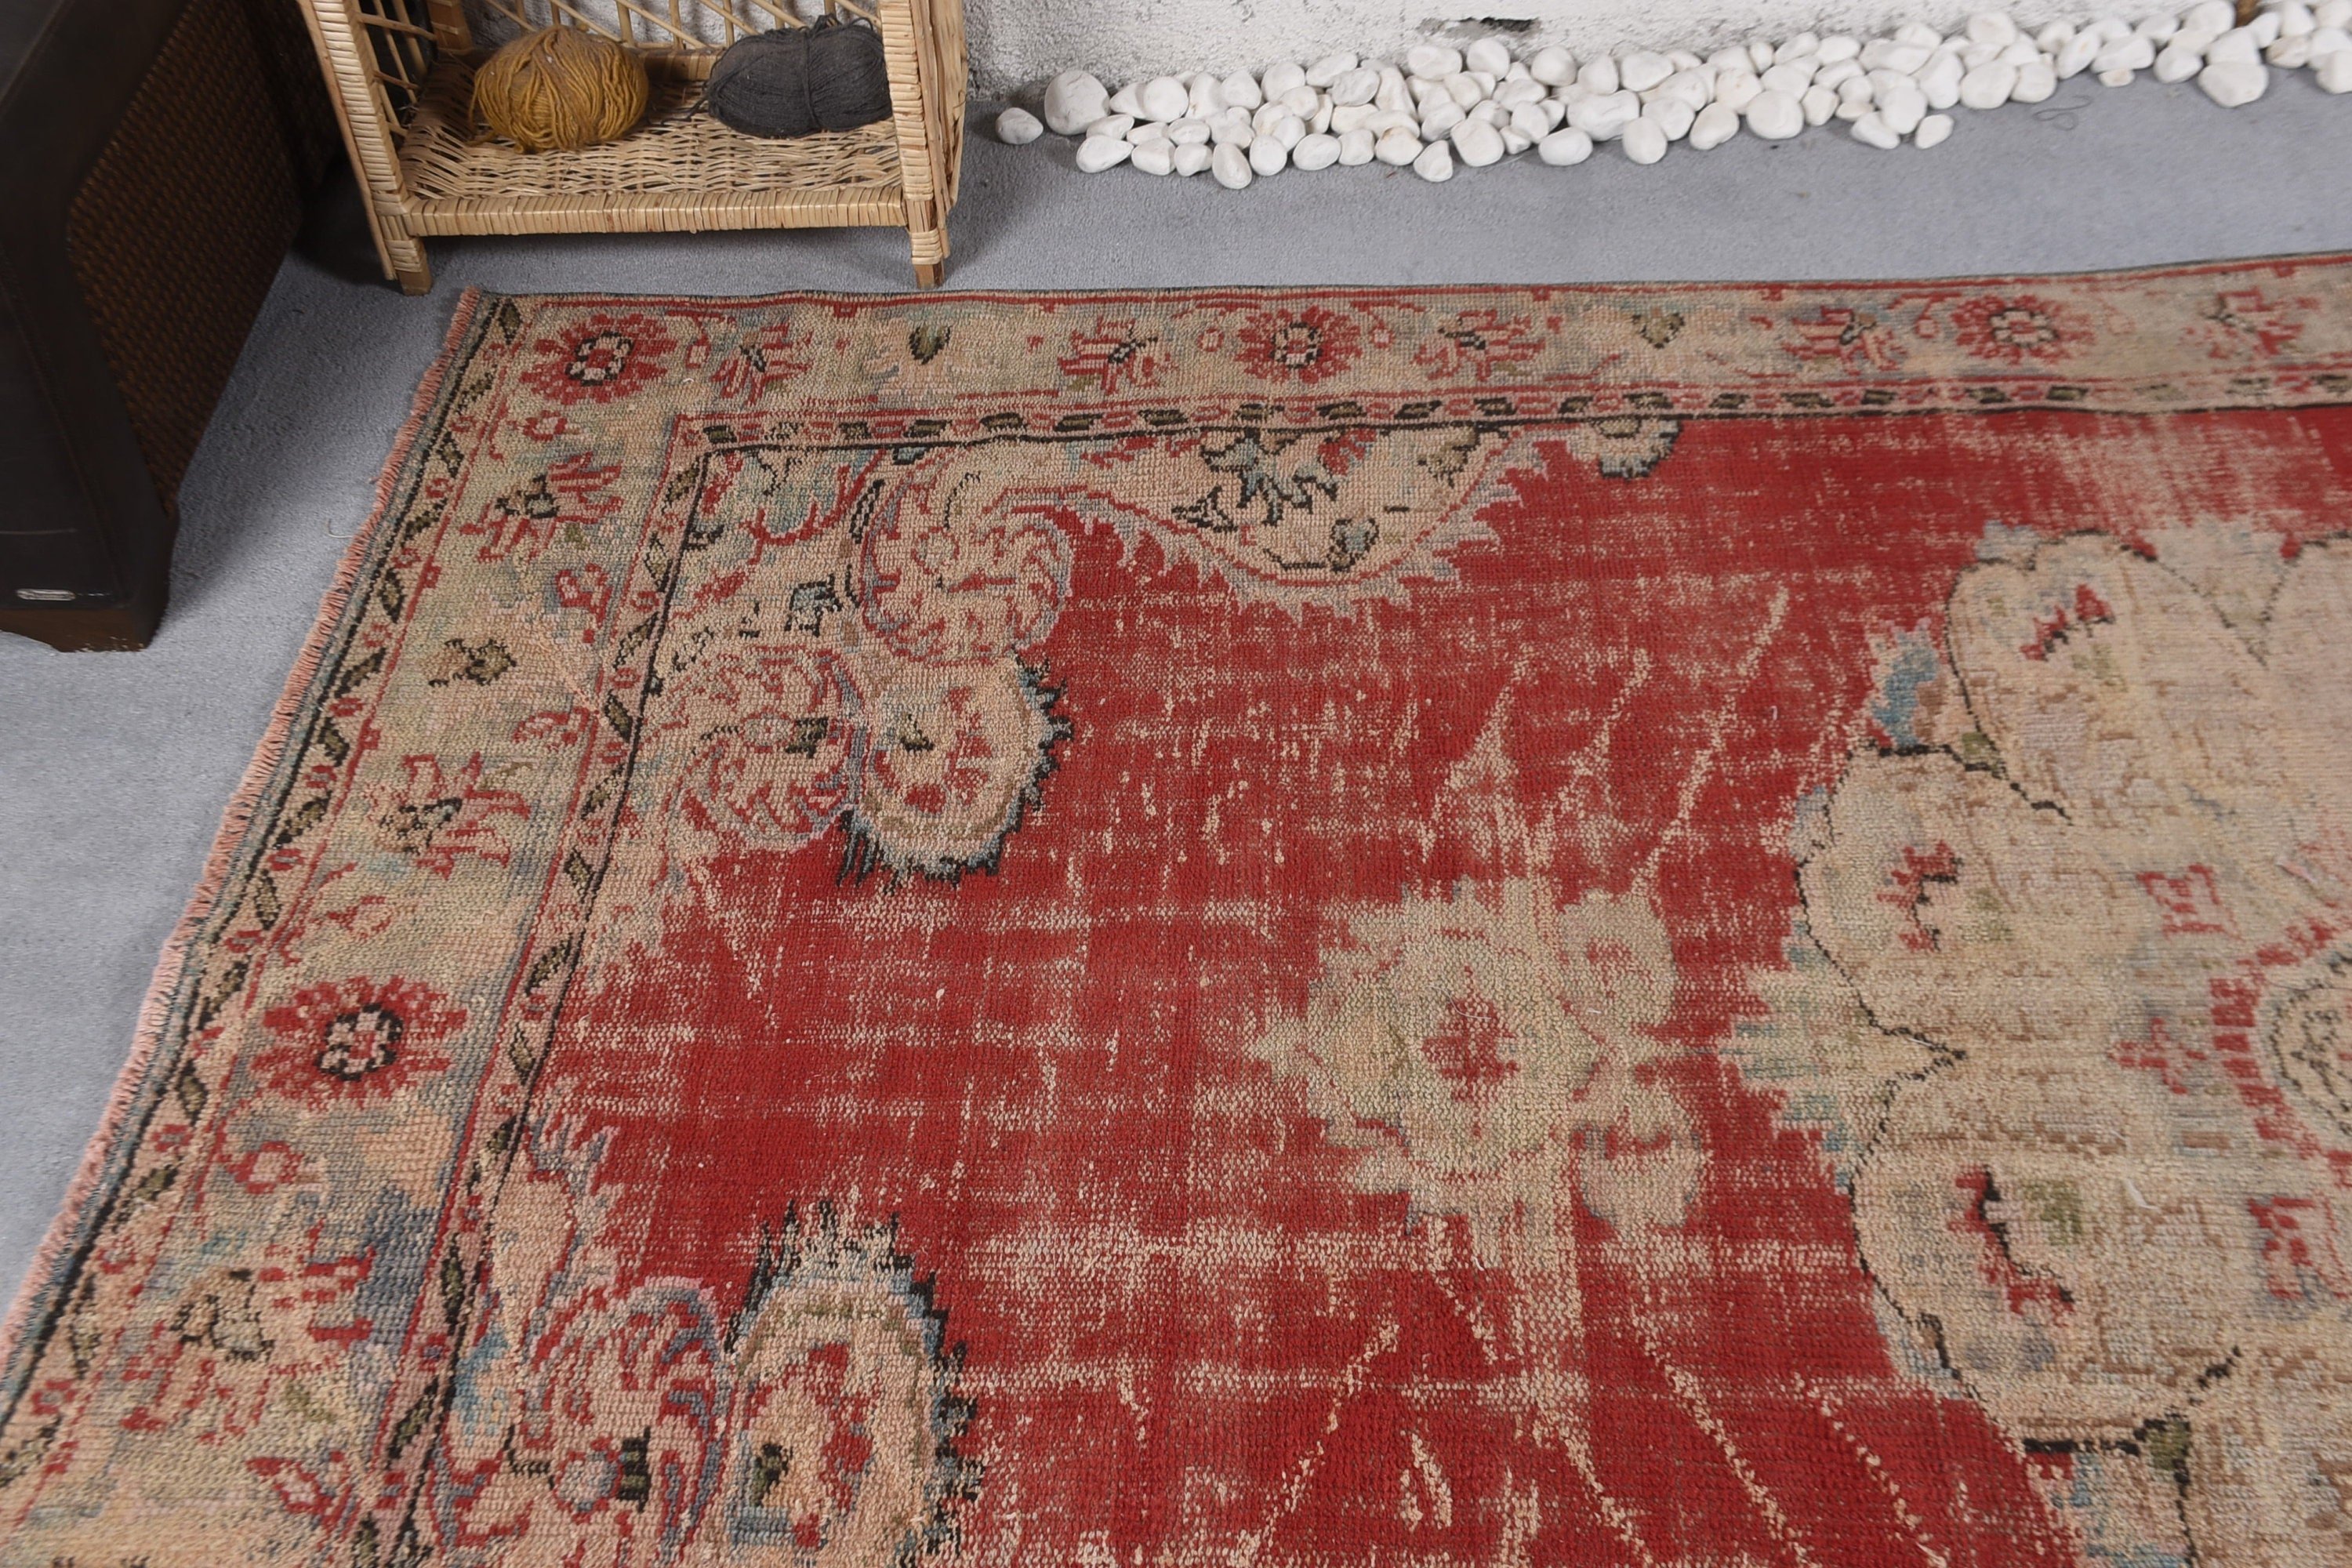 Office Rugs, Oriental Rug, Vintage Rugs, Red  5.7x9.3 ft Large Rugs, Floor Rug, Turkish Rug, Dining Room Rug, Living Room Rug